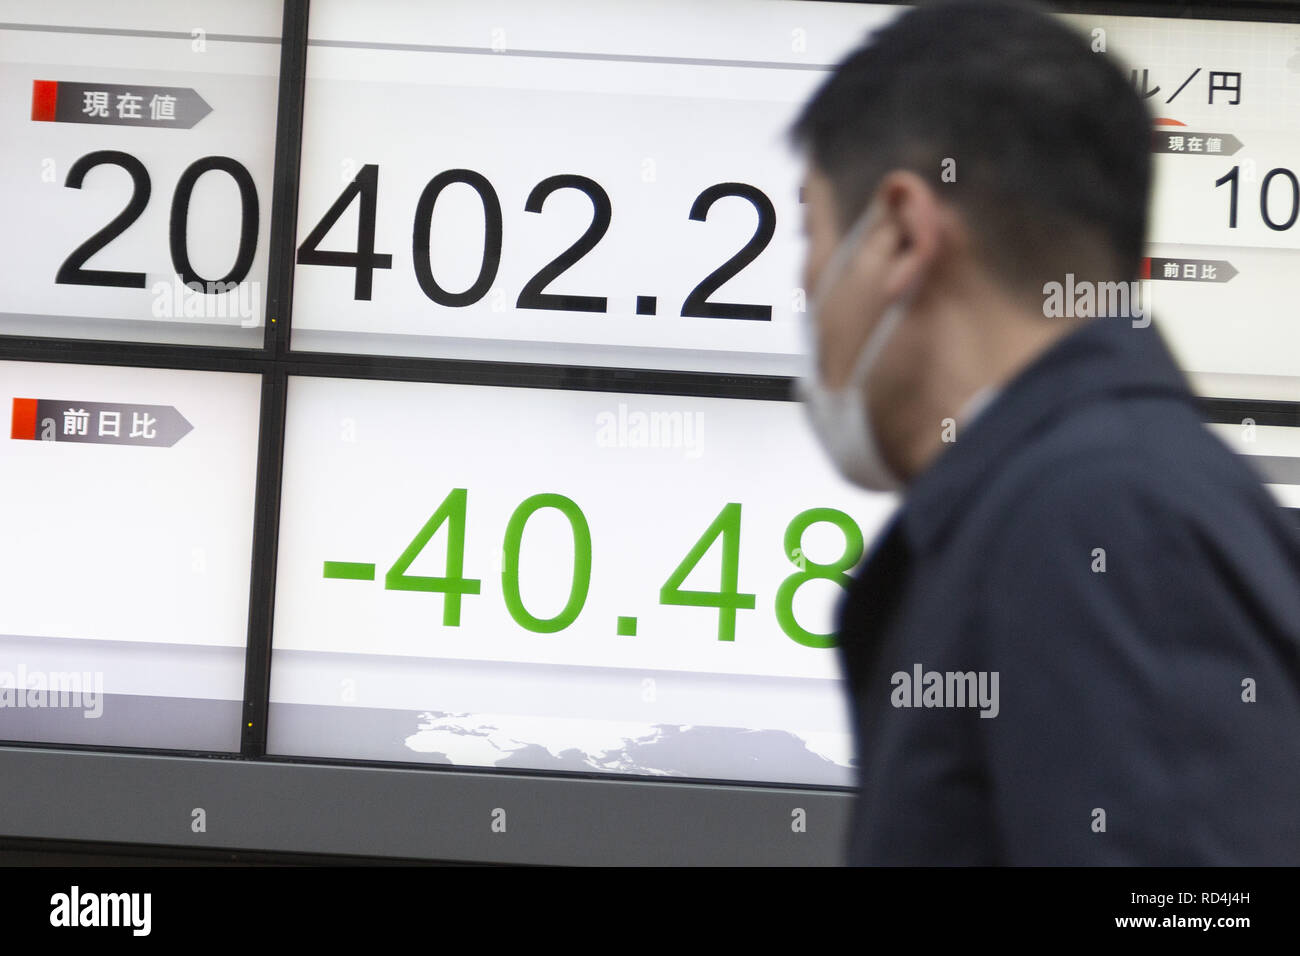 Enero 17, 2019 - Tokio, Japón - un hombre camina a lo largo de un tablero electrónico de valores mostrando Japón el Nikkei Stock promedio, que terminó abajo 40.48 puntos o 0.20 por ciento para cerrar en 20,402.27. El más amplio Topix índice agregado 0,35 por ciento o 5,43 puntos hasta situarse en 1,543.20. (Crédito de la Imagen: © Rodrigo Reyes Marin/ZUMA Wire) Foto de stock